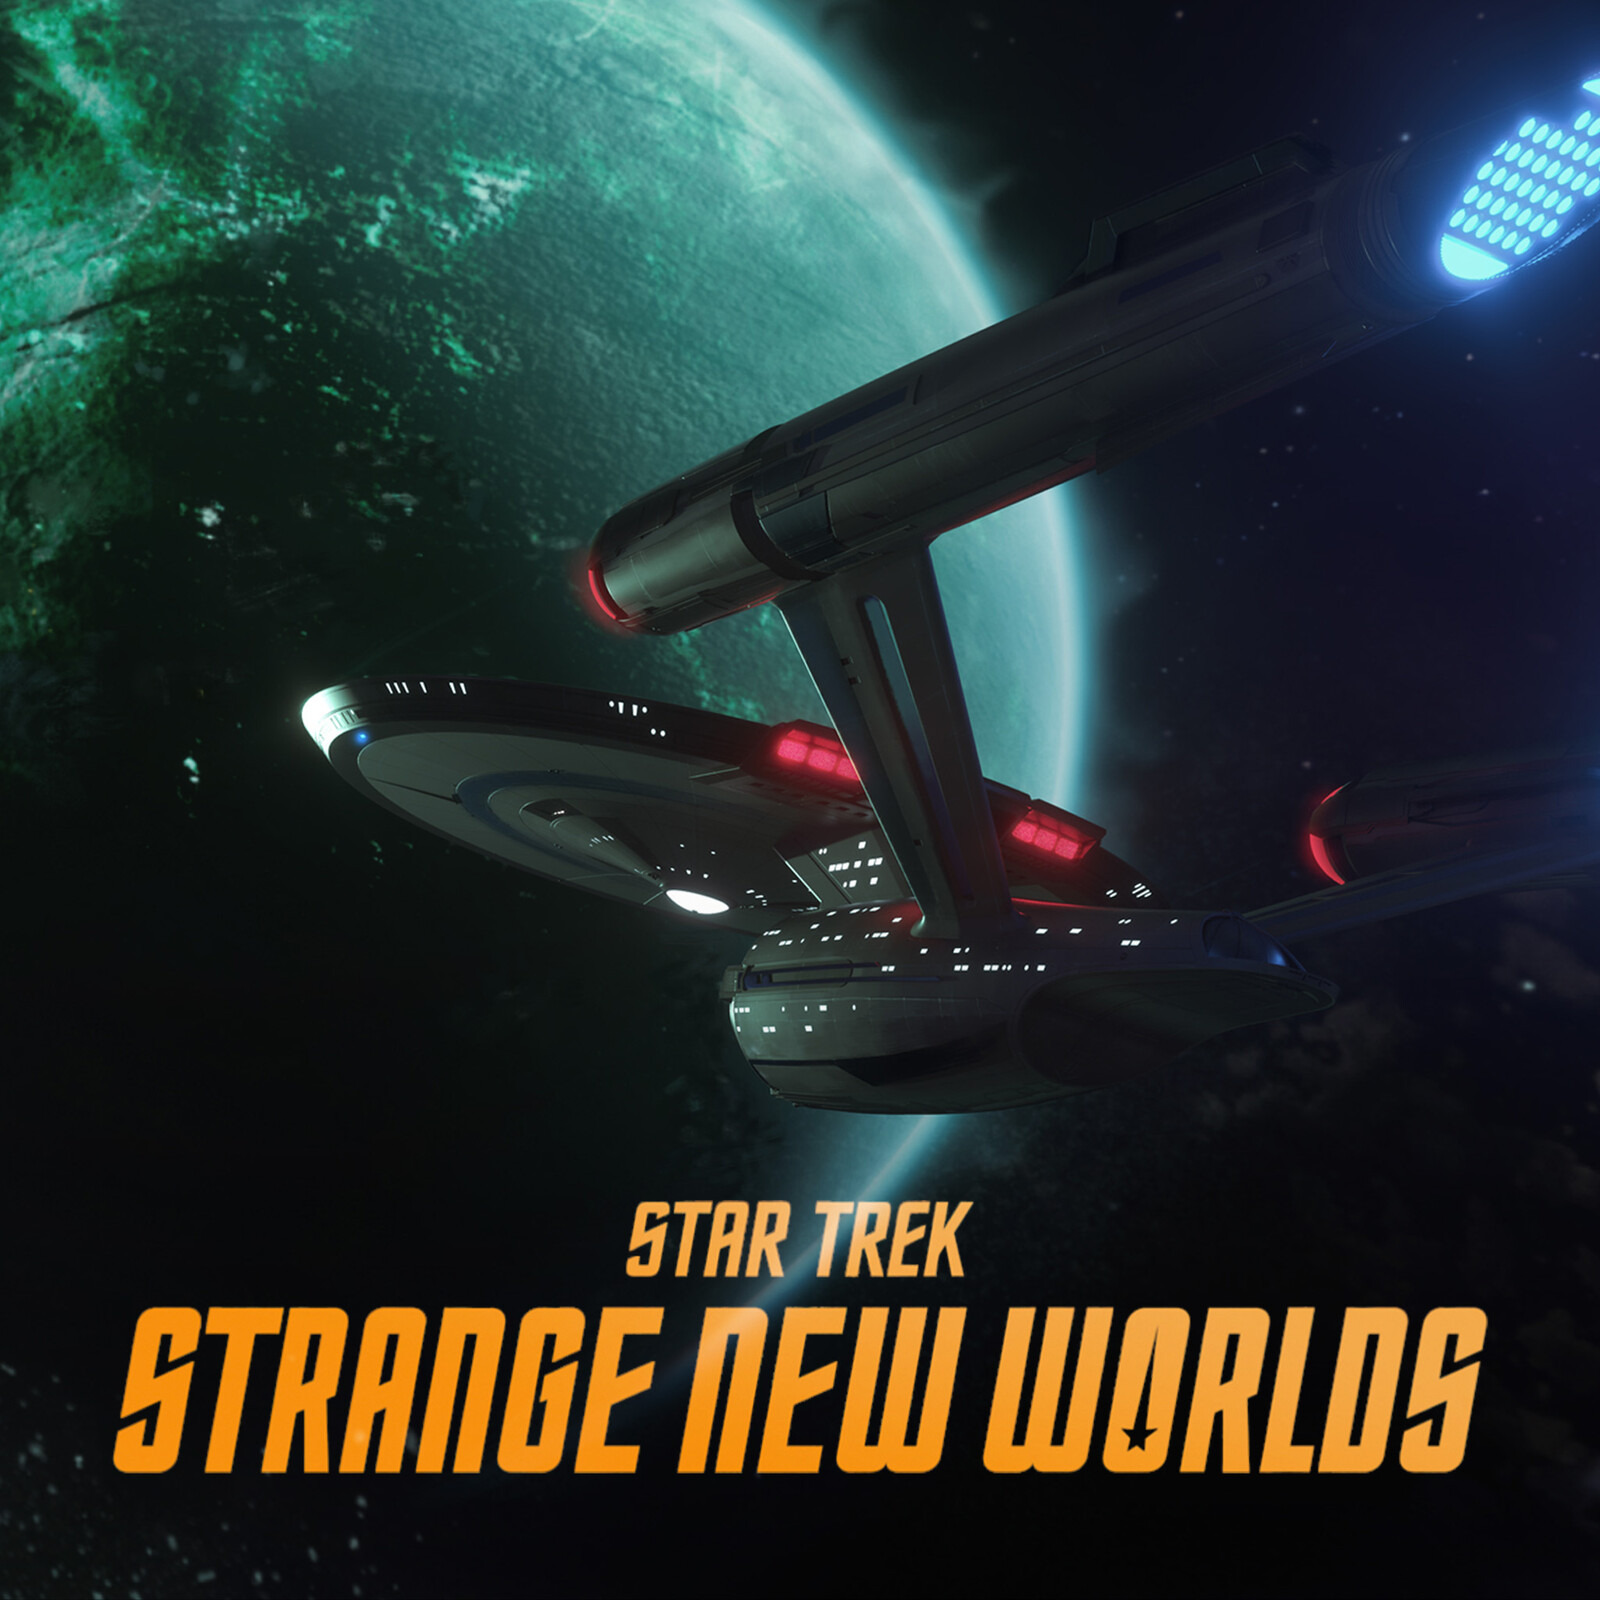 Star Trek: Strange New Worlds - Peregrine's Descent